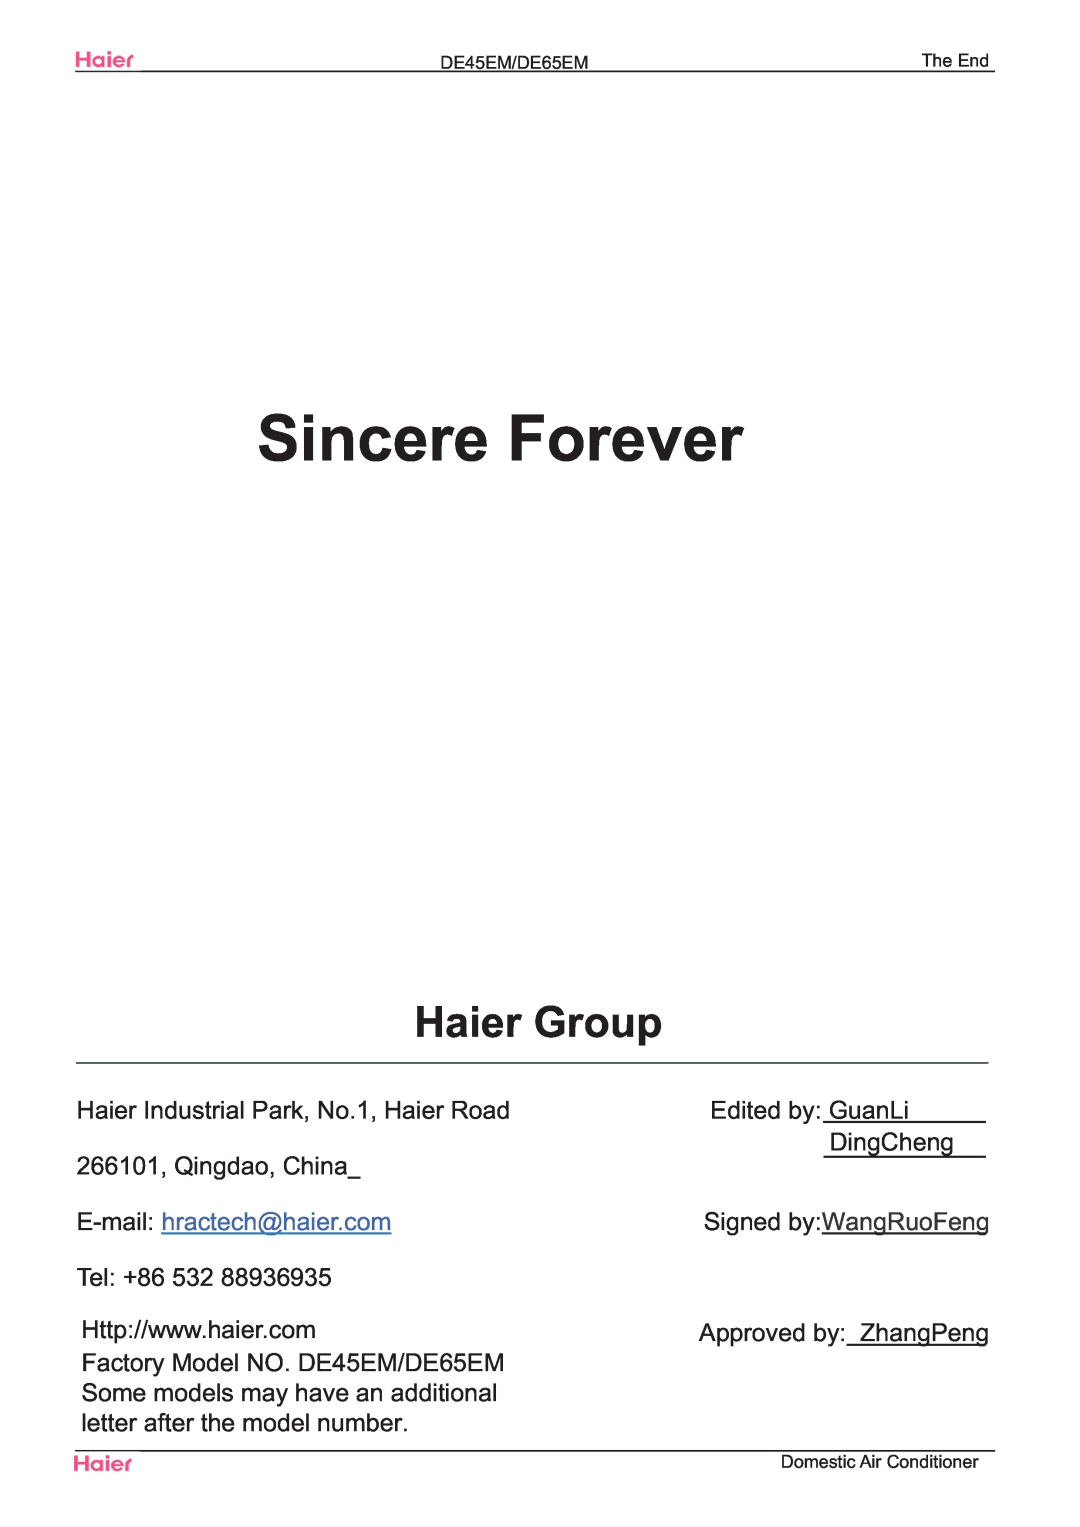 Haier DE45EM, DE65EM Sincere Forever, Haier Group, Haier Industrial Park, No.1, Haier Road 266101, Qingdao, China, Tel +86 